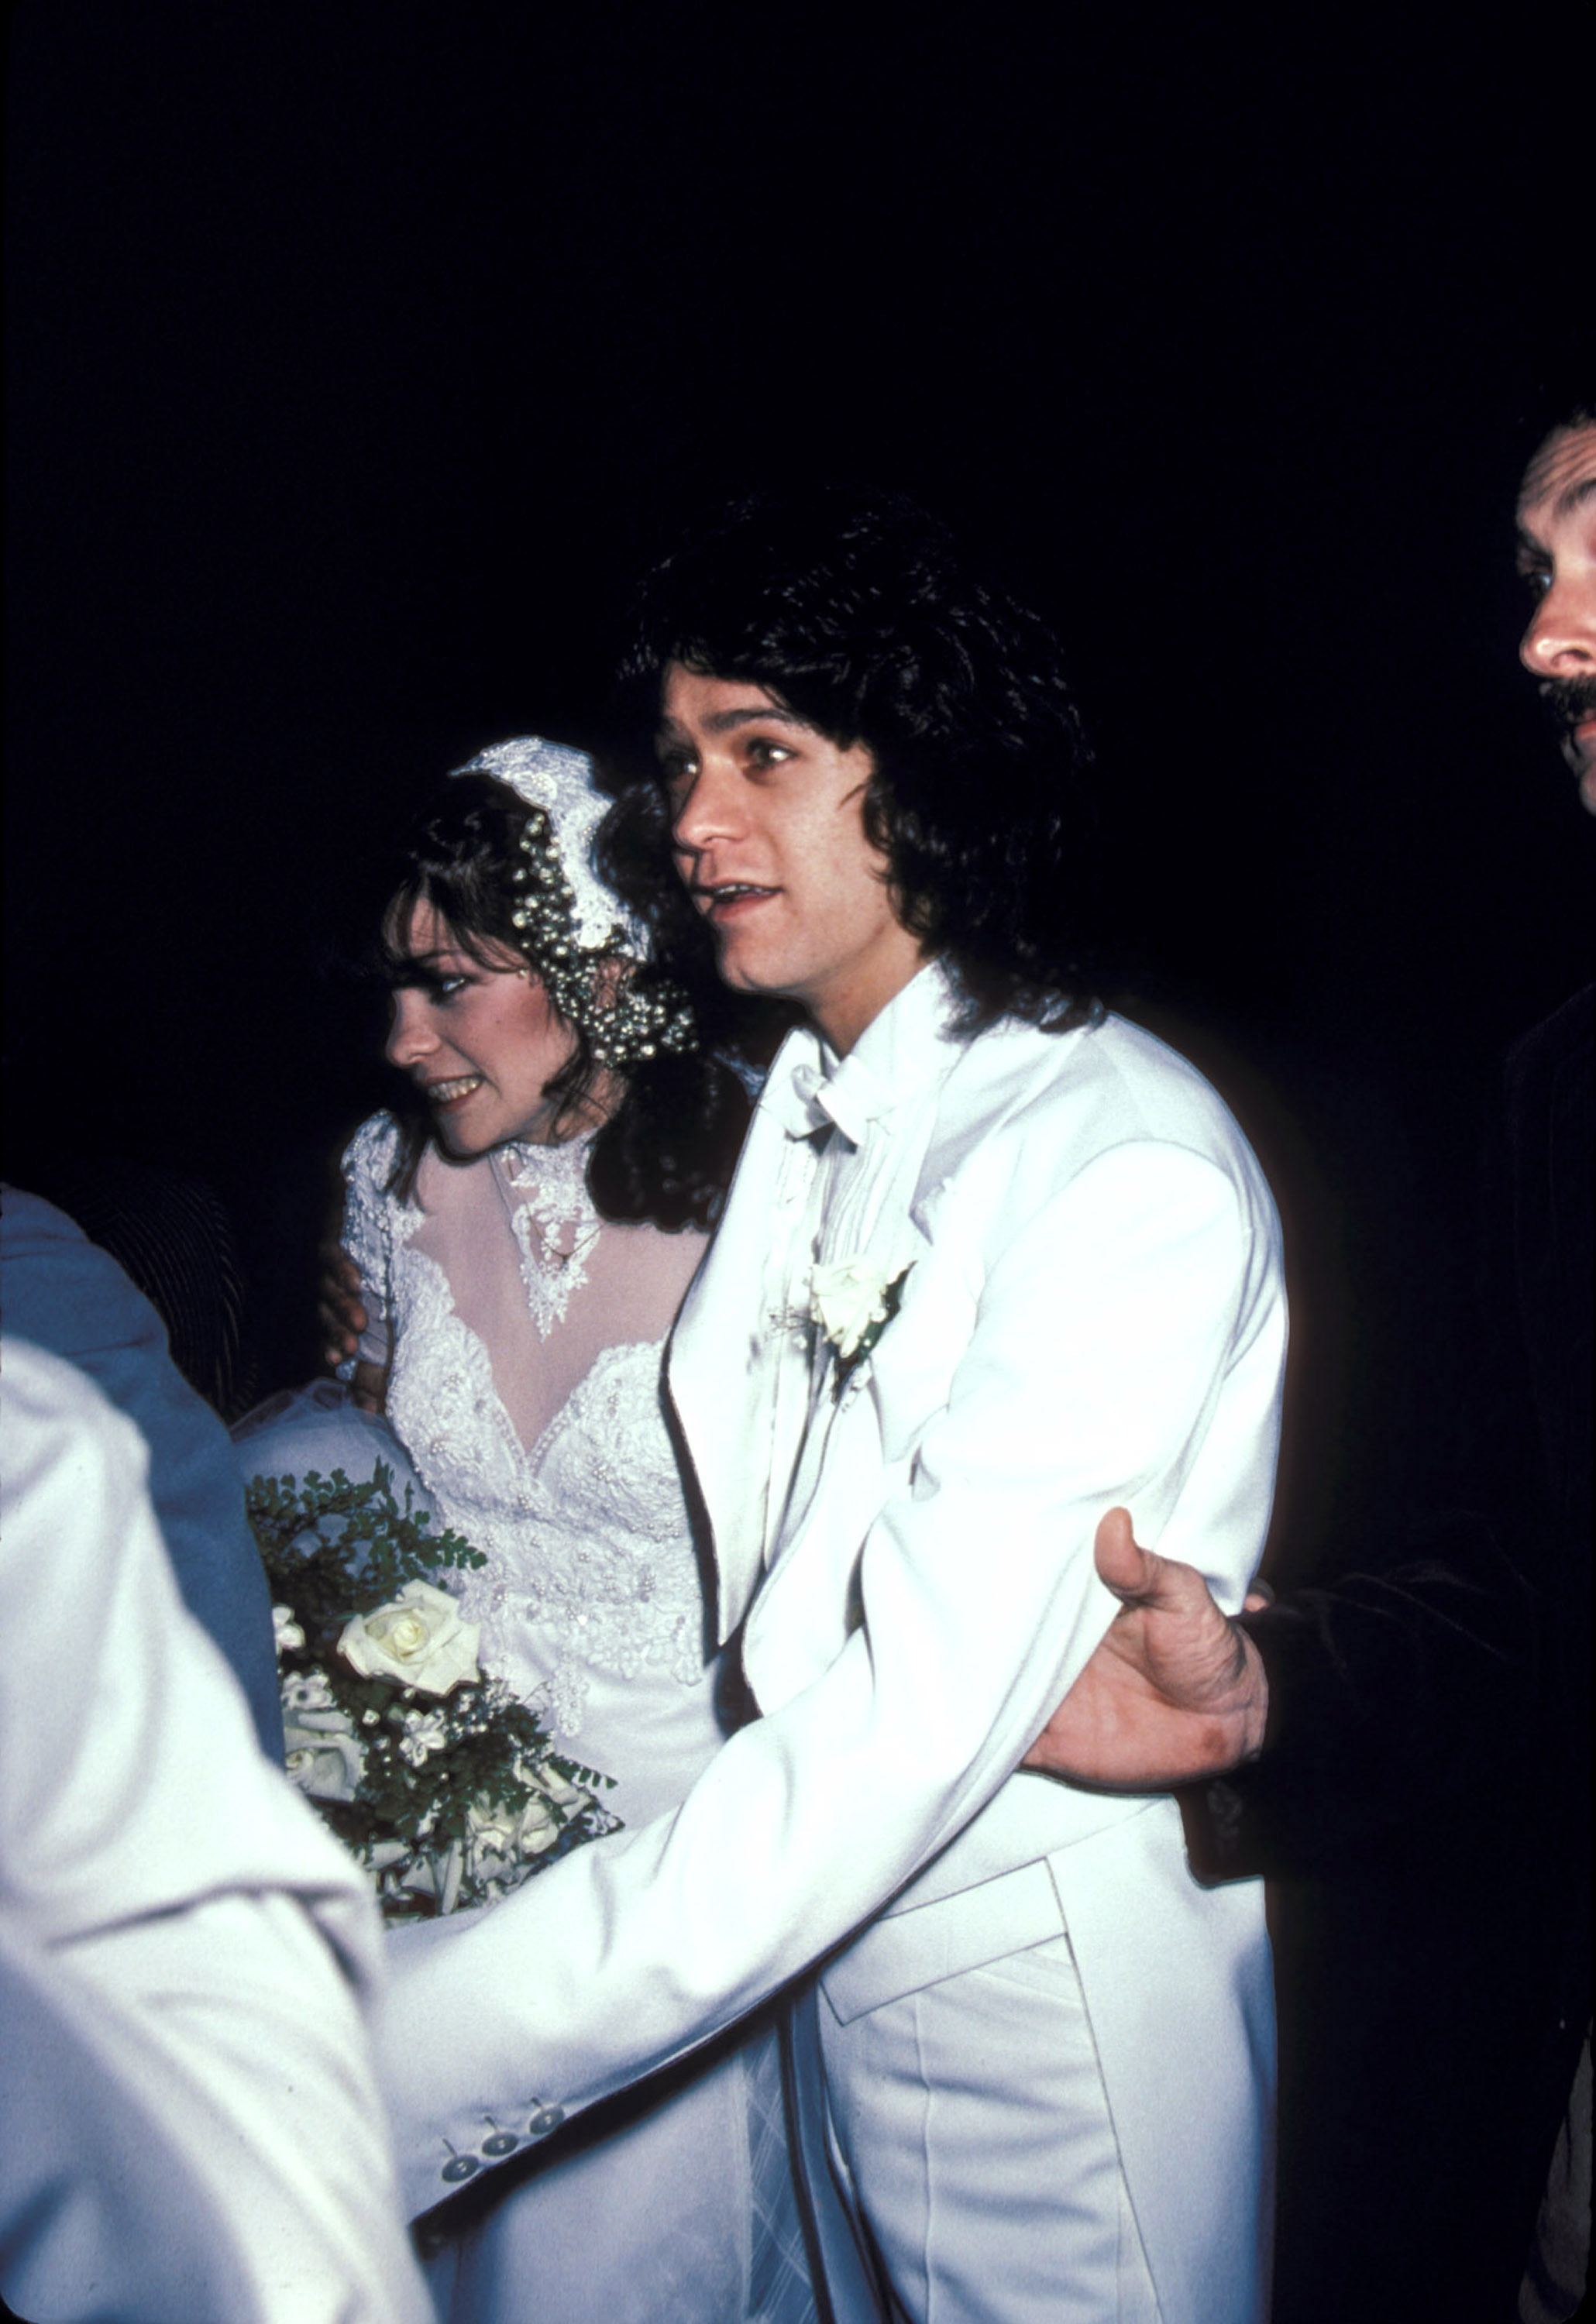 Valerie Bertinelli and Eddie Van Halen at their wedding in 1981